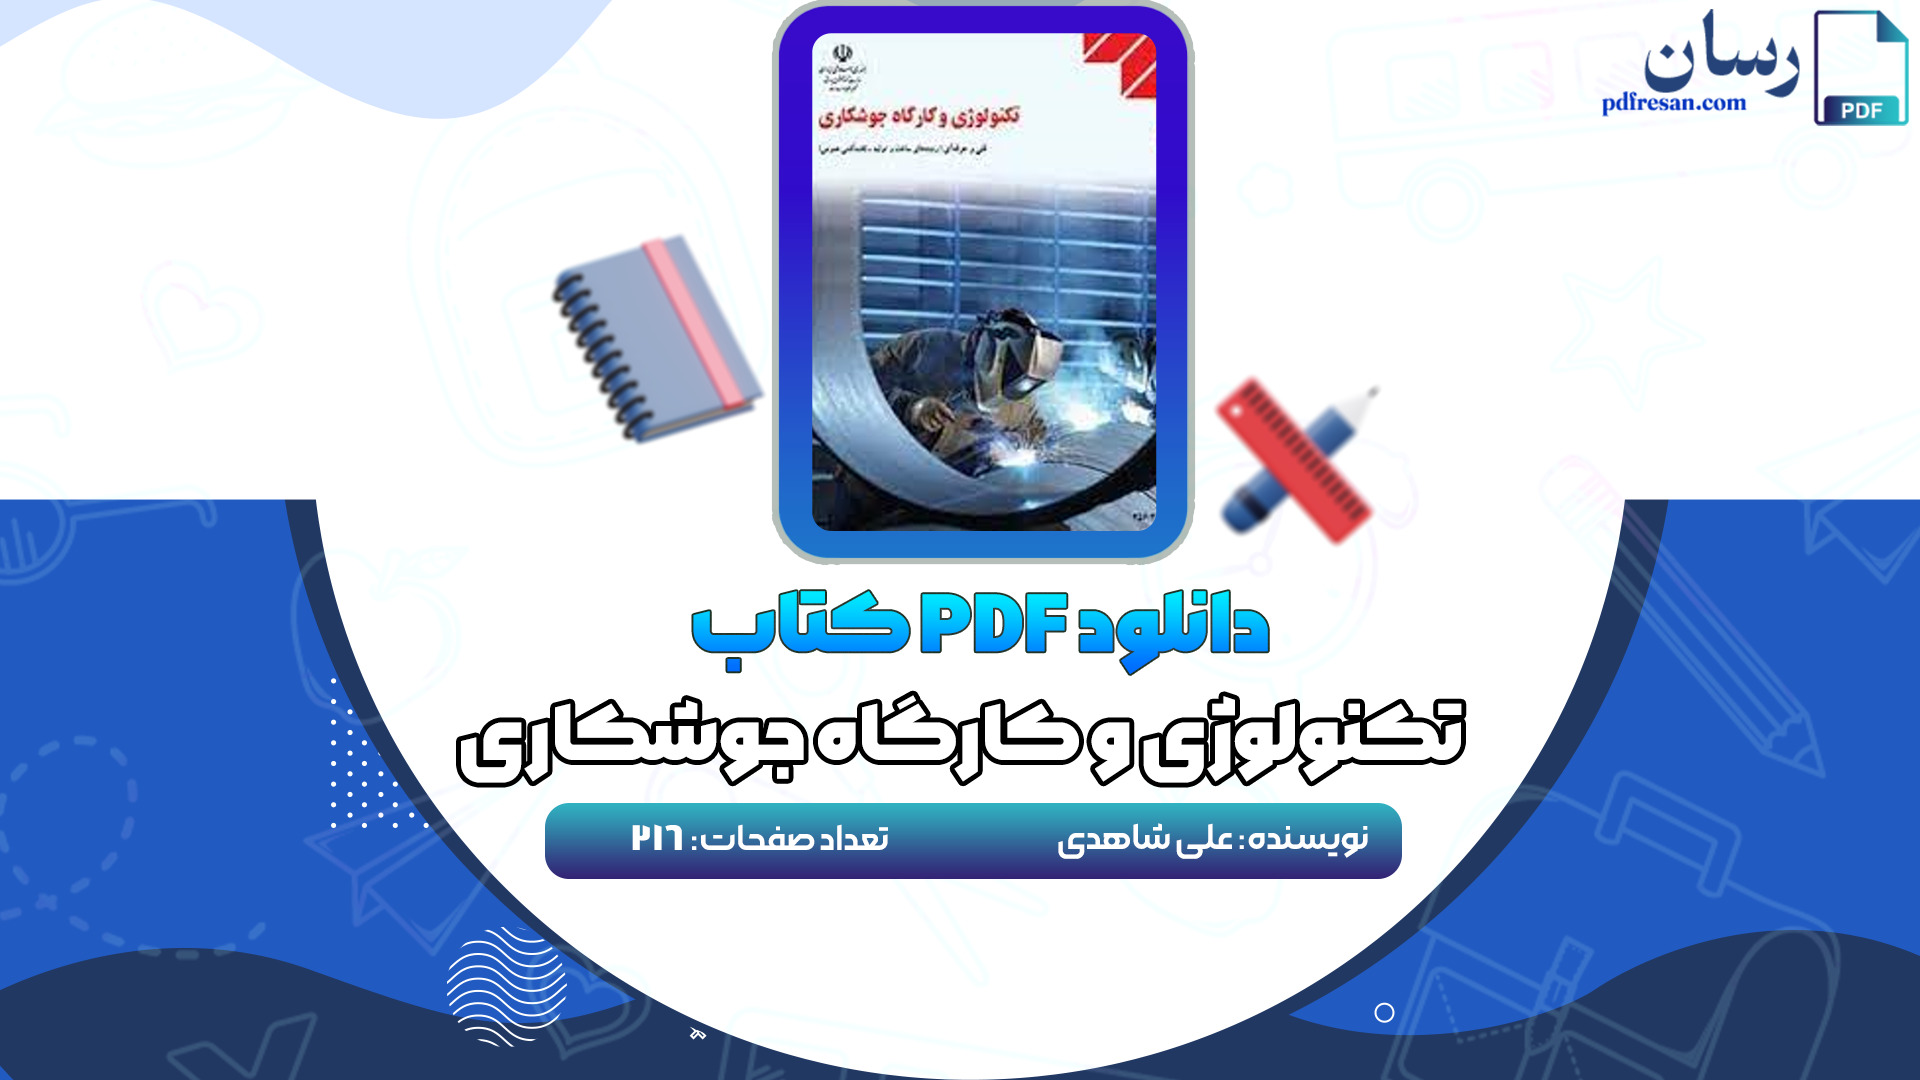 دانلود کتاب تکنولوژی و کارگاه جوشکاری علی شاهدی PDF